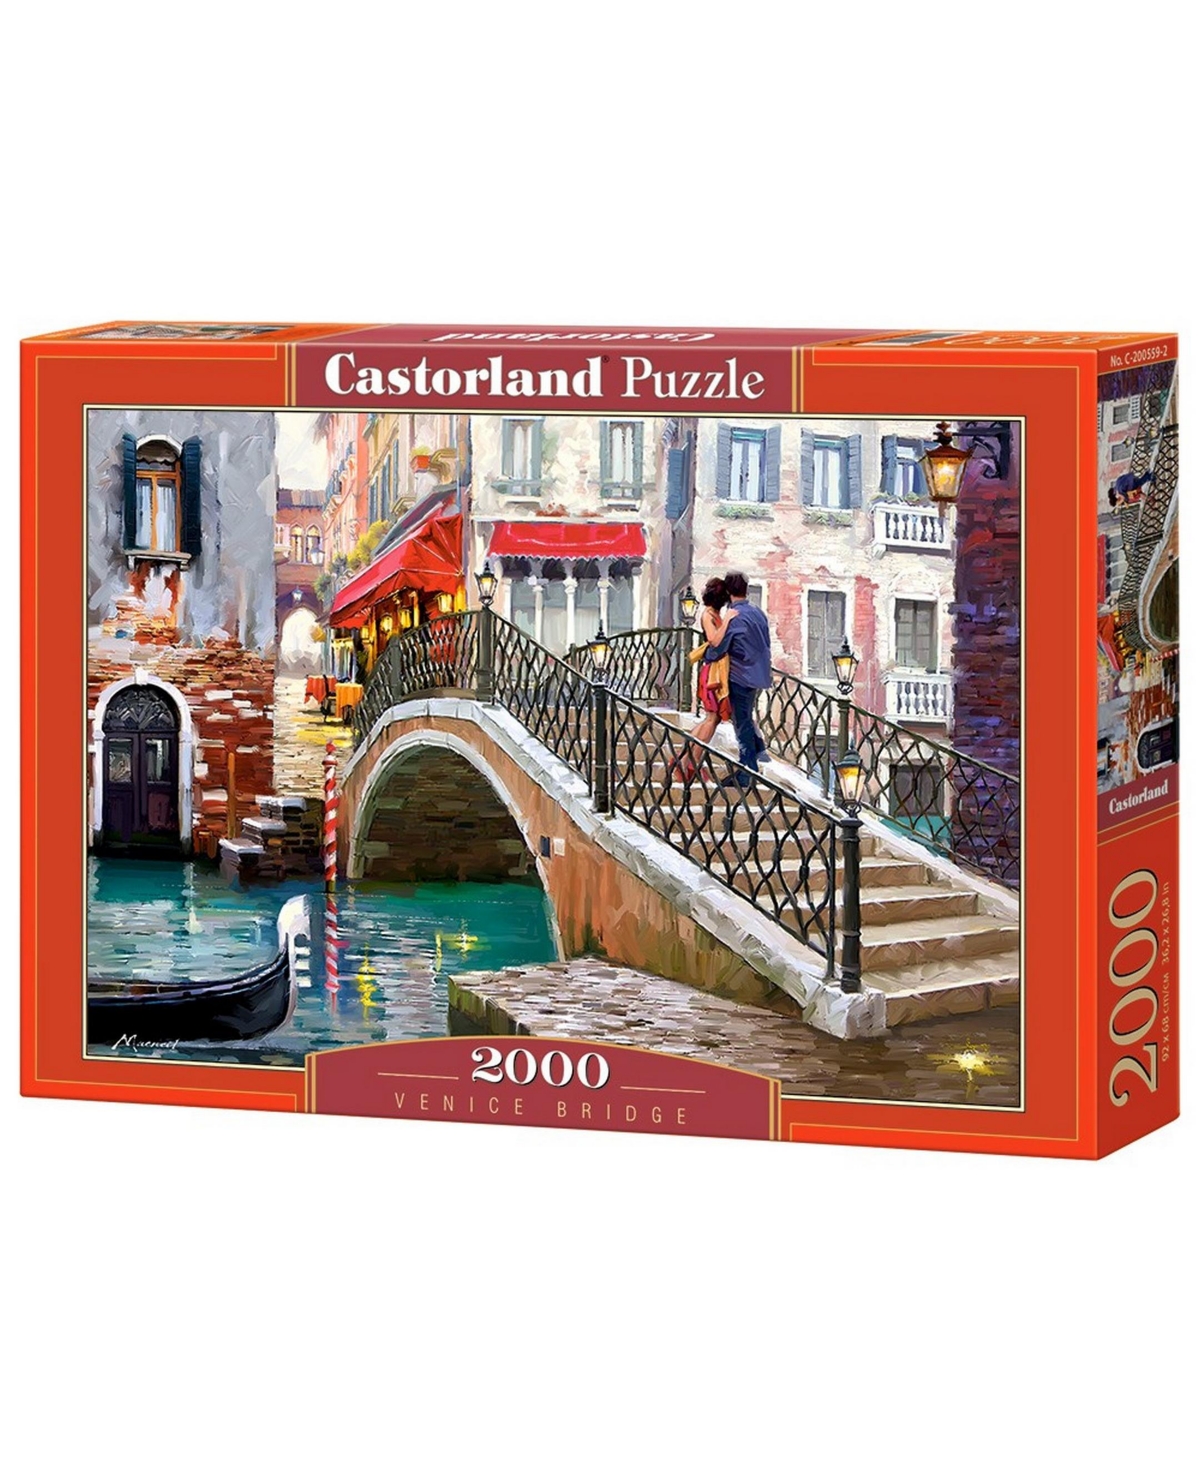 Castorland Kids' Venice Bridge Jigsaw Puzzle Set, 2000 Piece In Multicolor